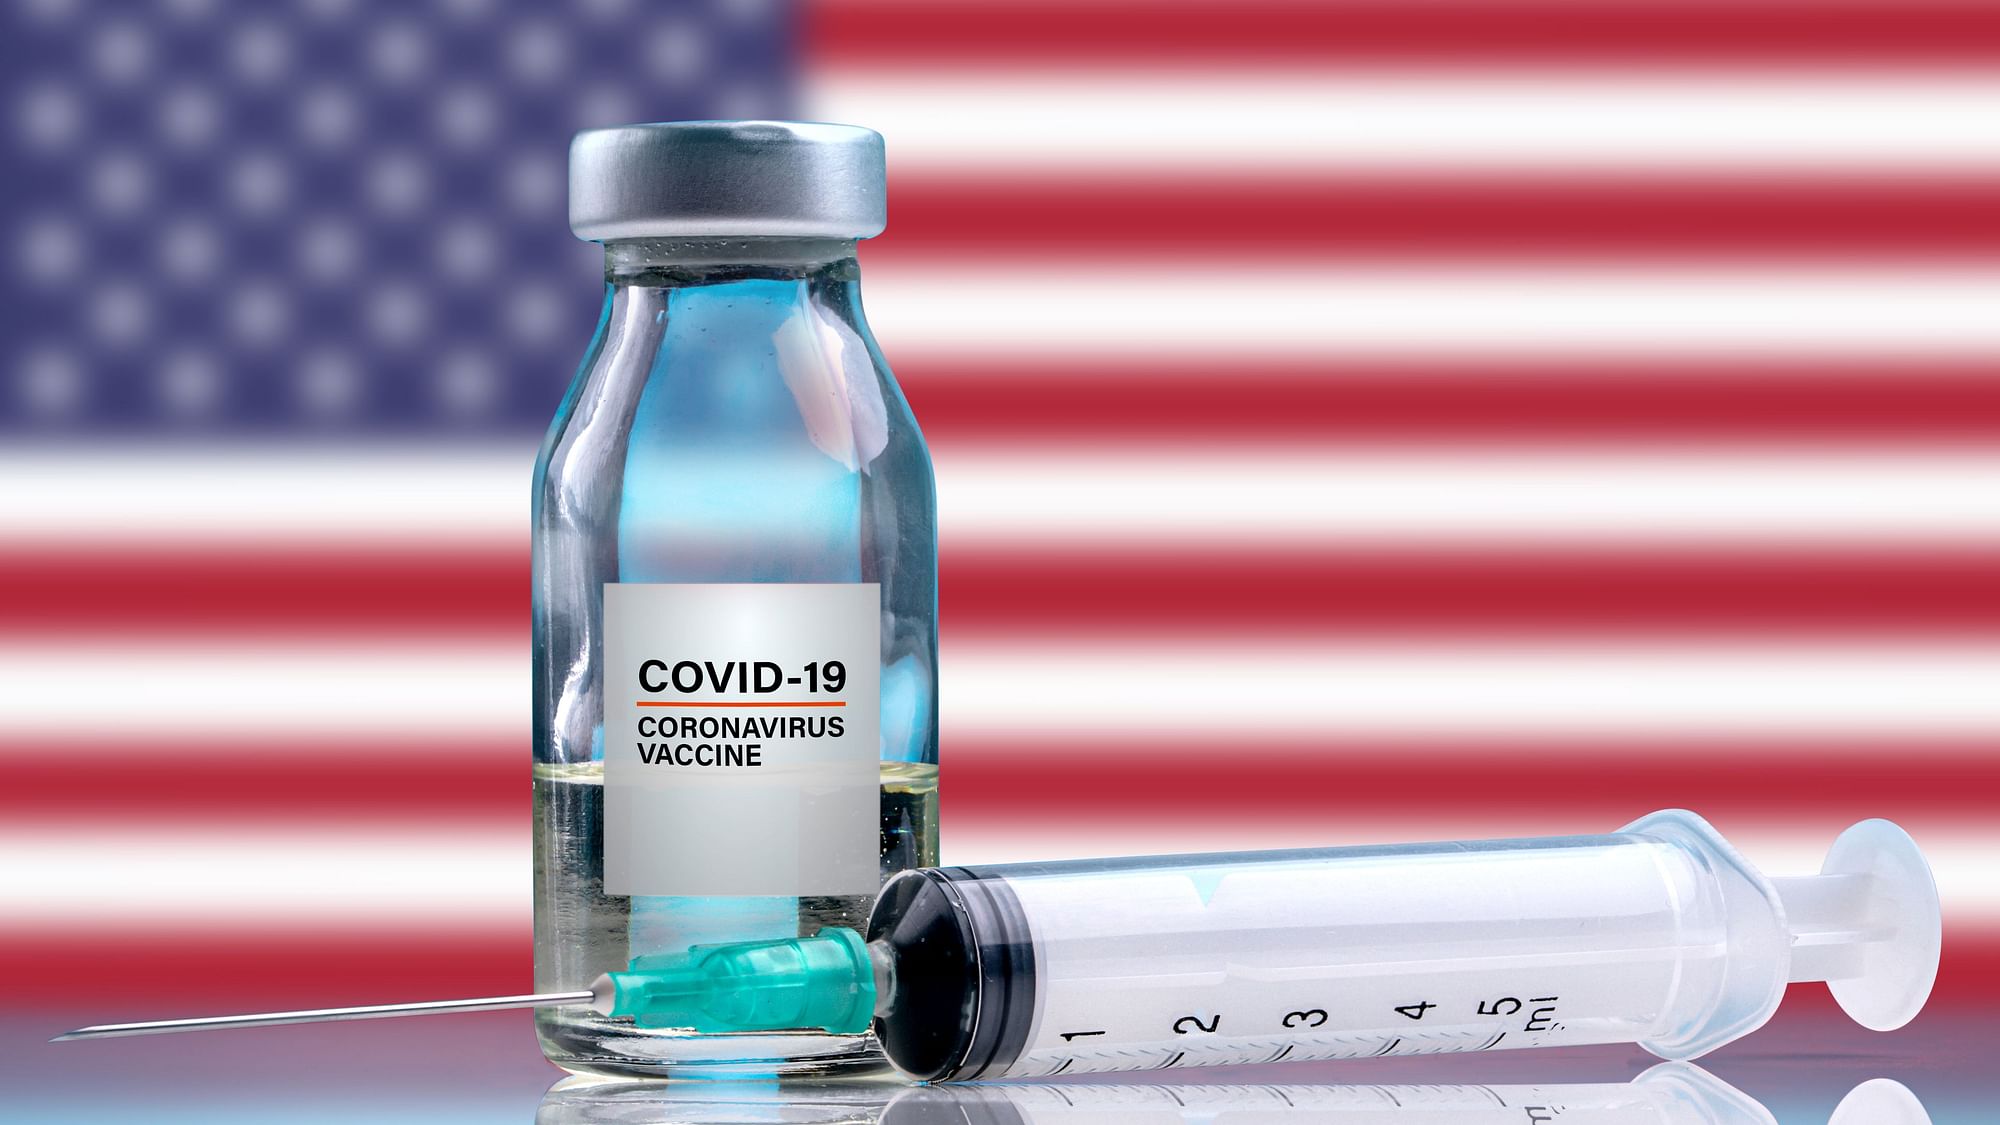 <div class="paragraphs"><p>COVID-19 वैक्सीन : अमेरिका में छह महीने से पांच साल तक के बच्चों को देना शुरू किया गया</p></div>